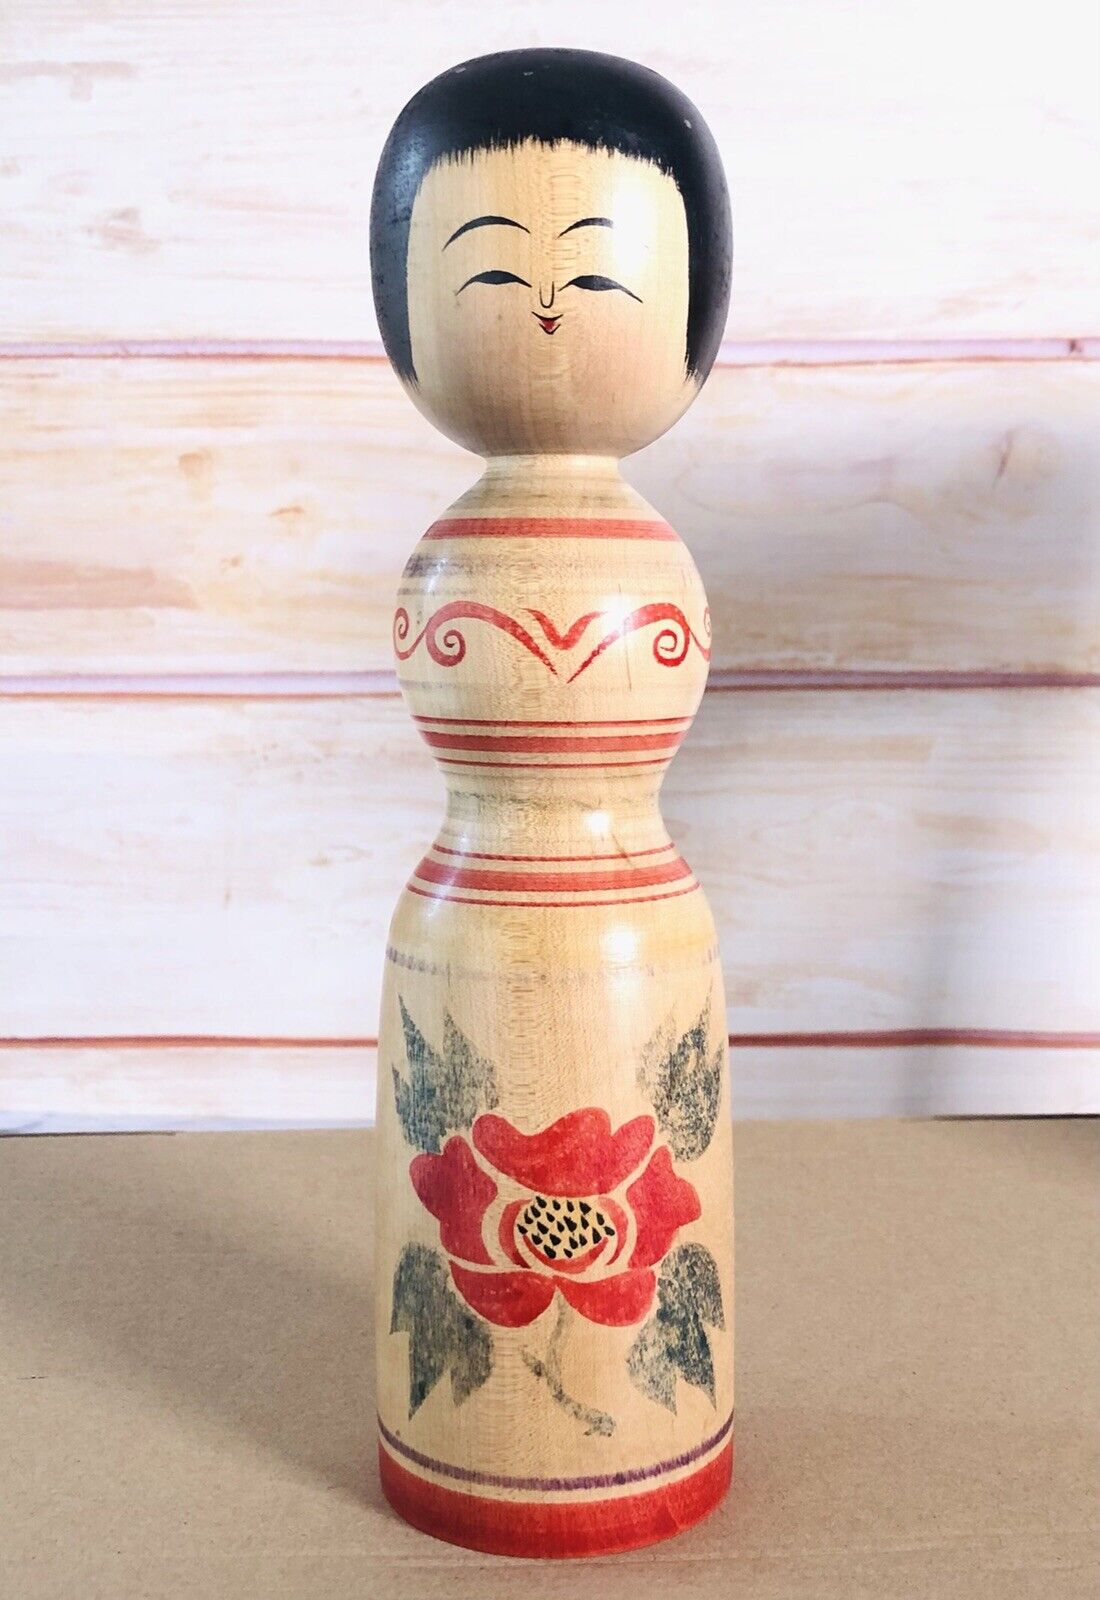 Vintage Smiley Kokeshi Tsugaru-kei Doll 24cm/9.4 in tall a02